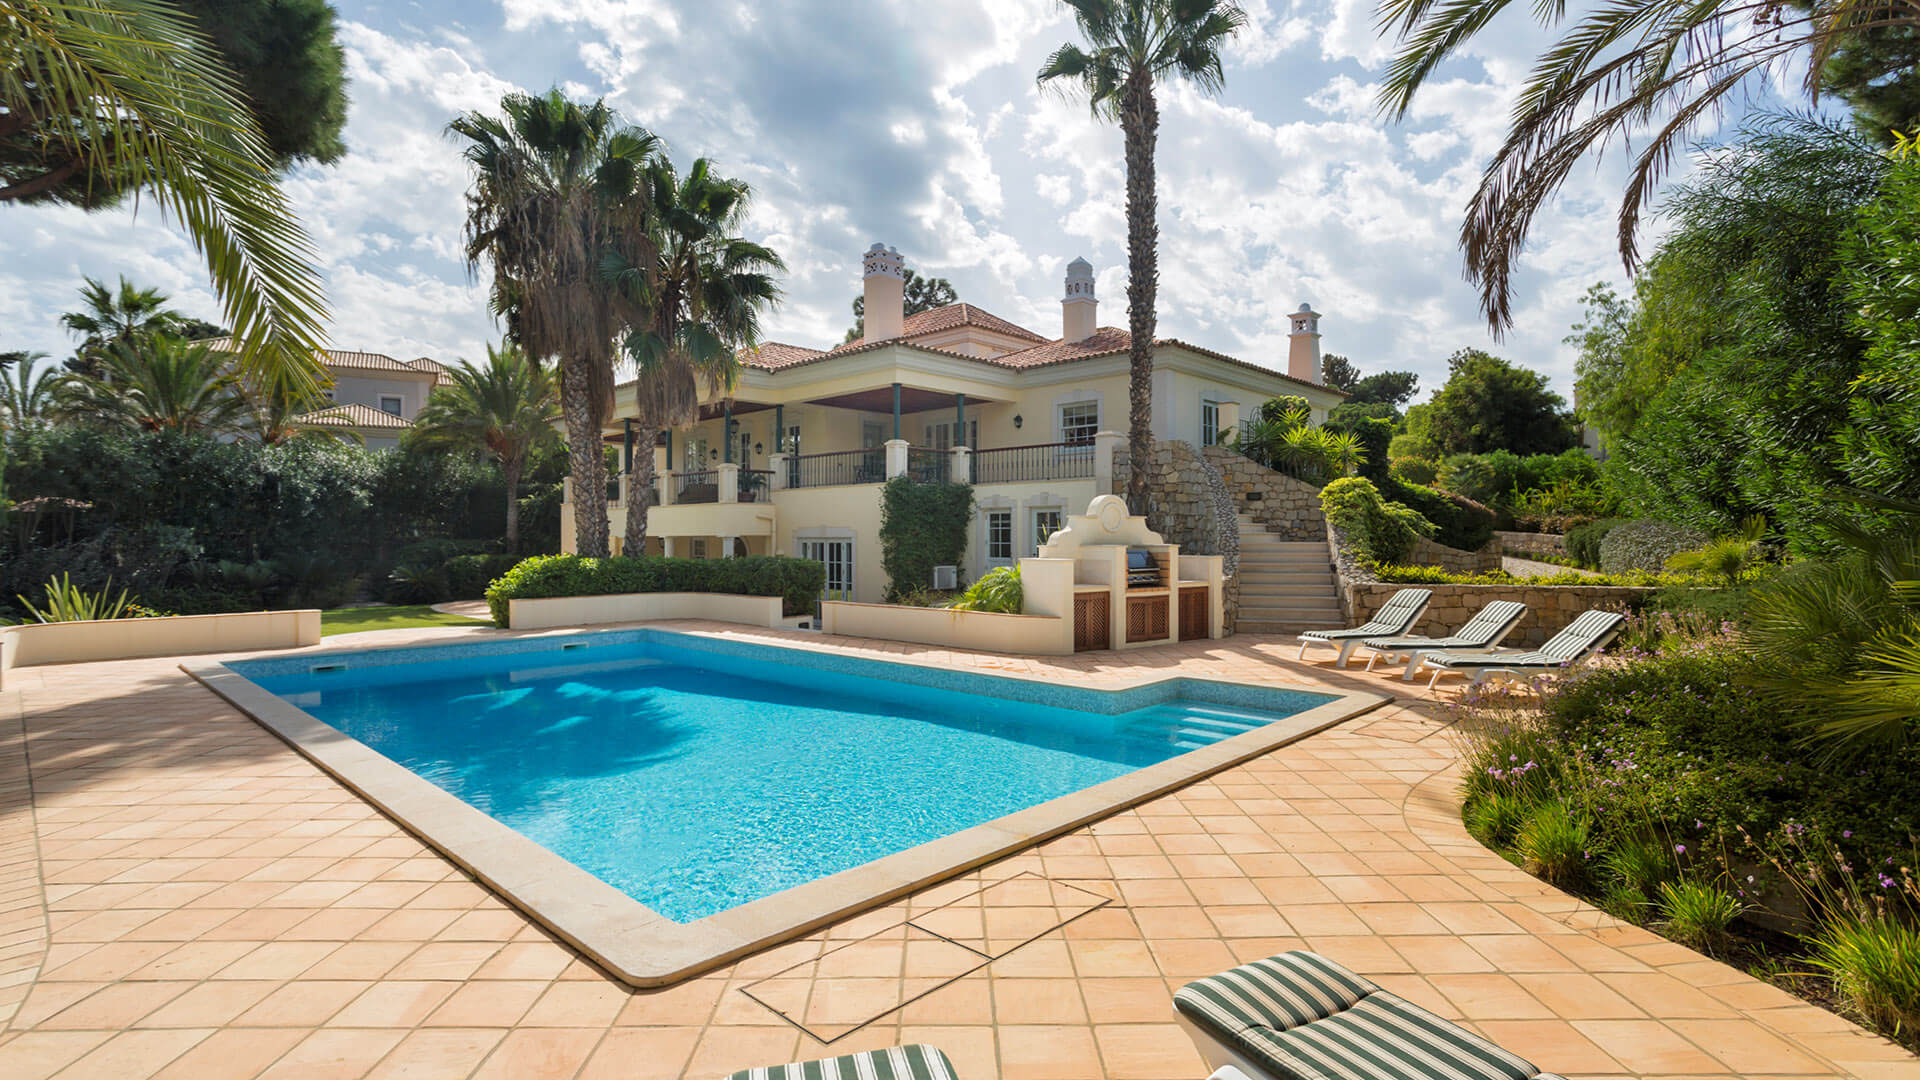 Villa Villa Noccila, Rental in Algarve